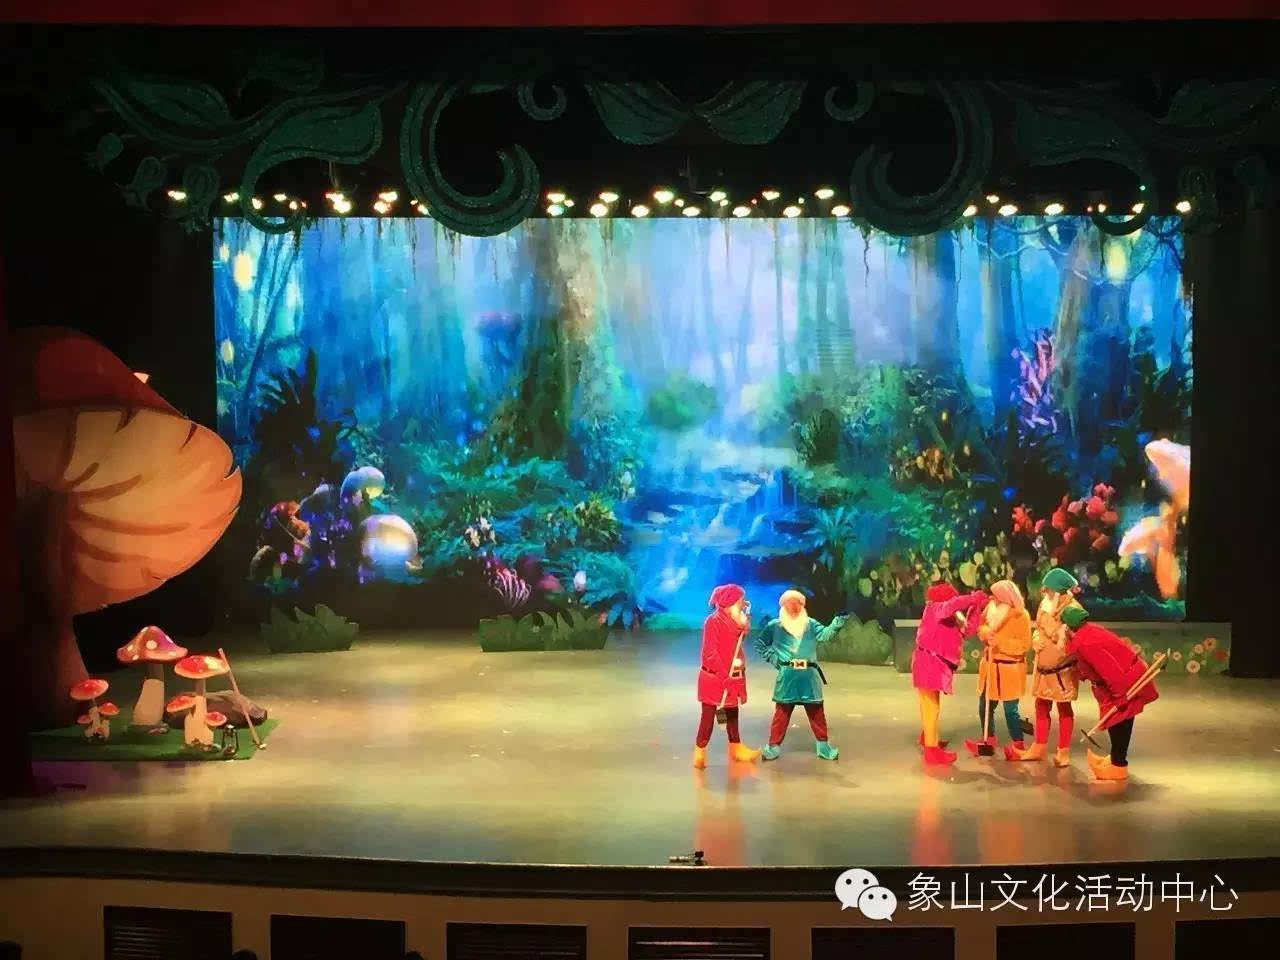 [天然舞台]经典儿童剧《美人鱼》与《白雪公主》来袭!